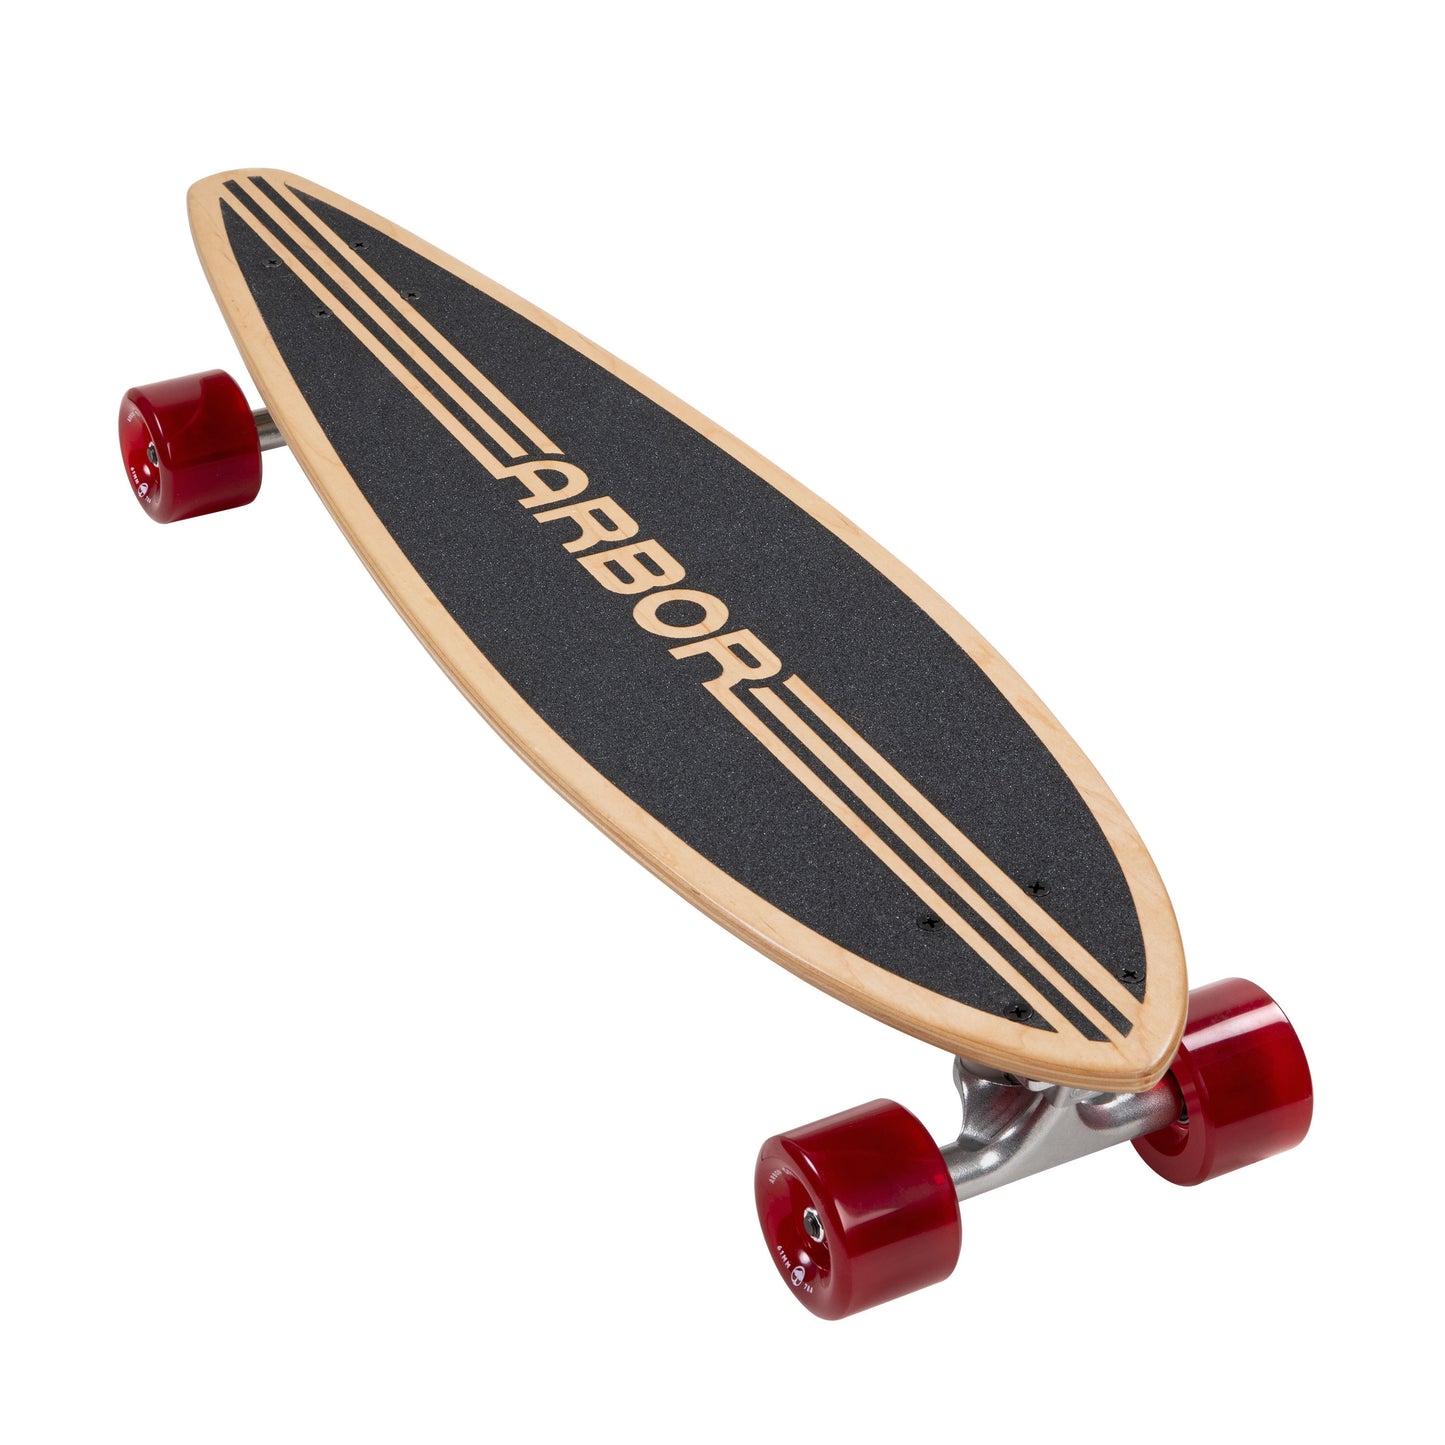 Arbor Skateboards Hawkshaw Micron Cruiser – Arbor